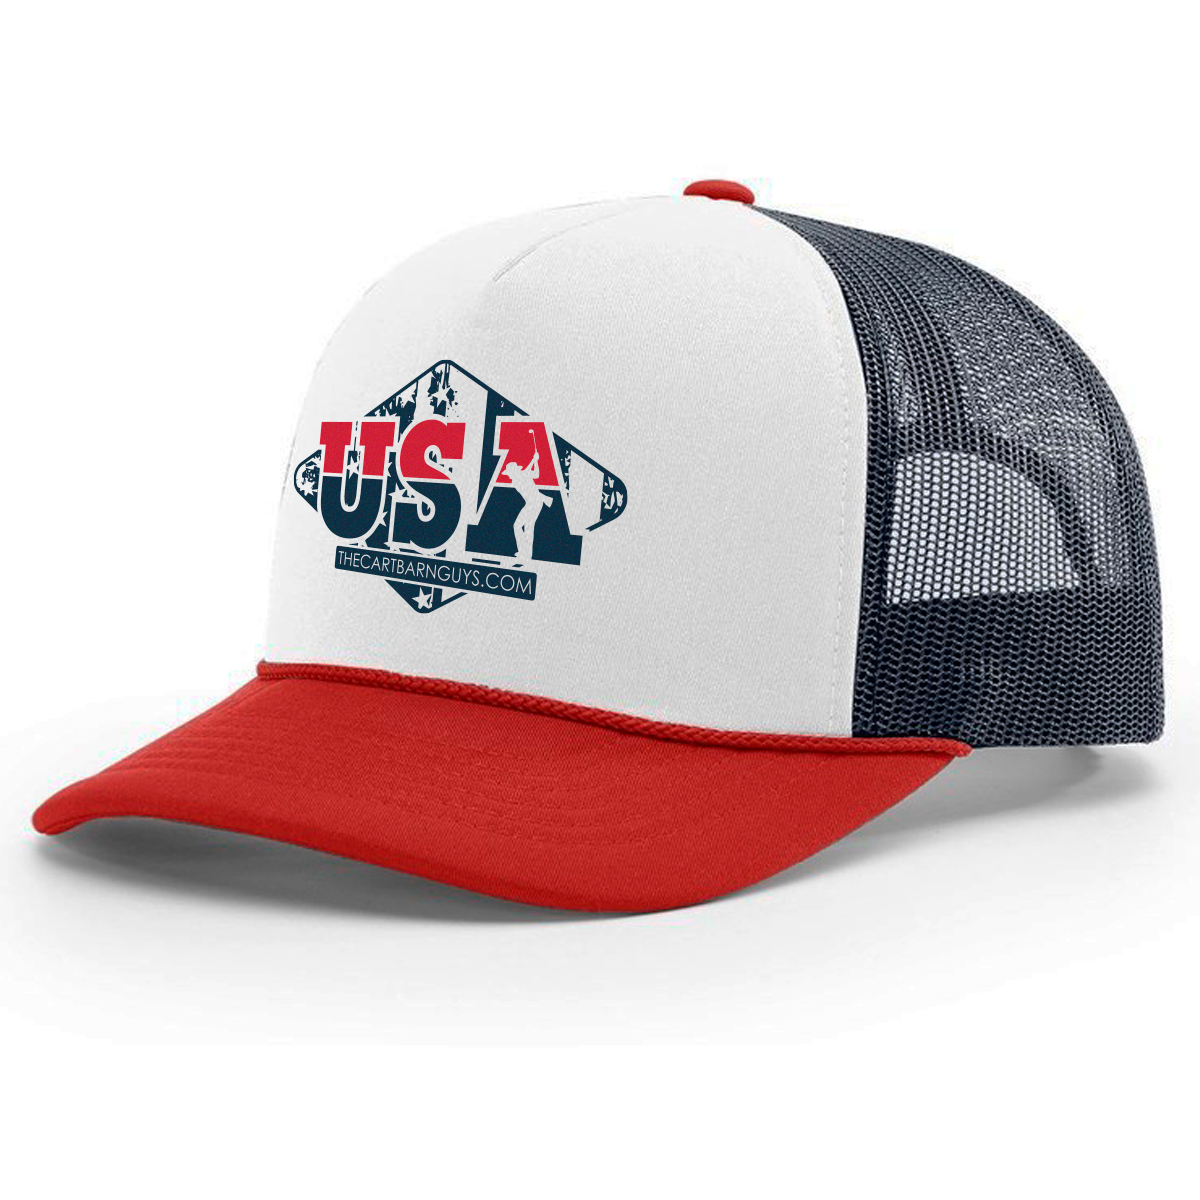 2018 USA Trucker Hat